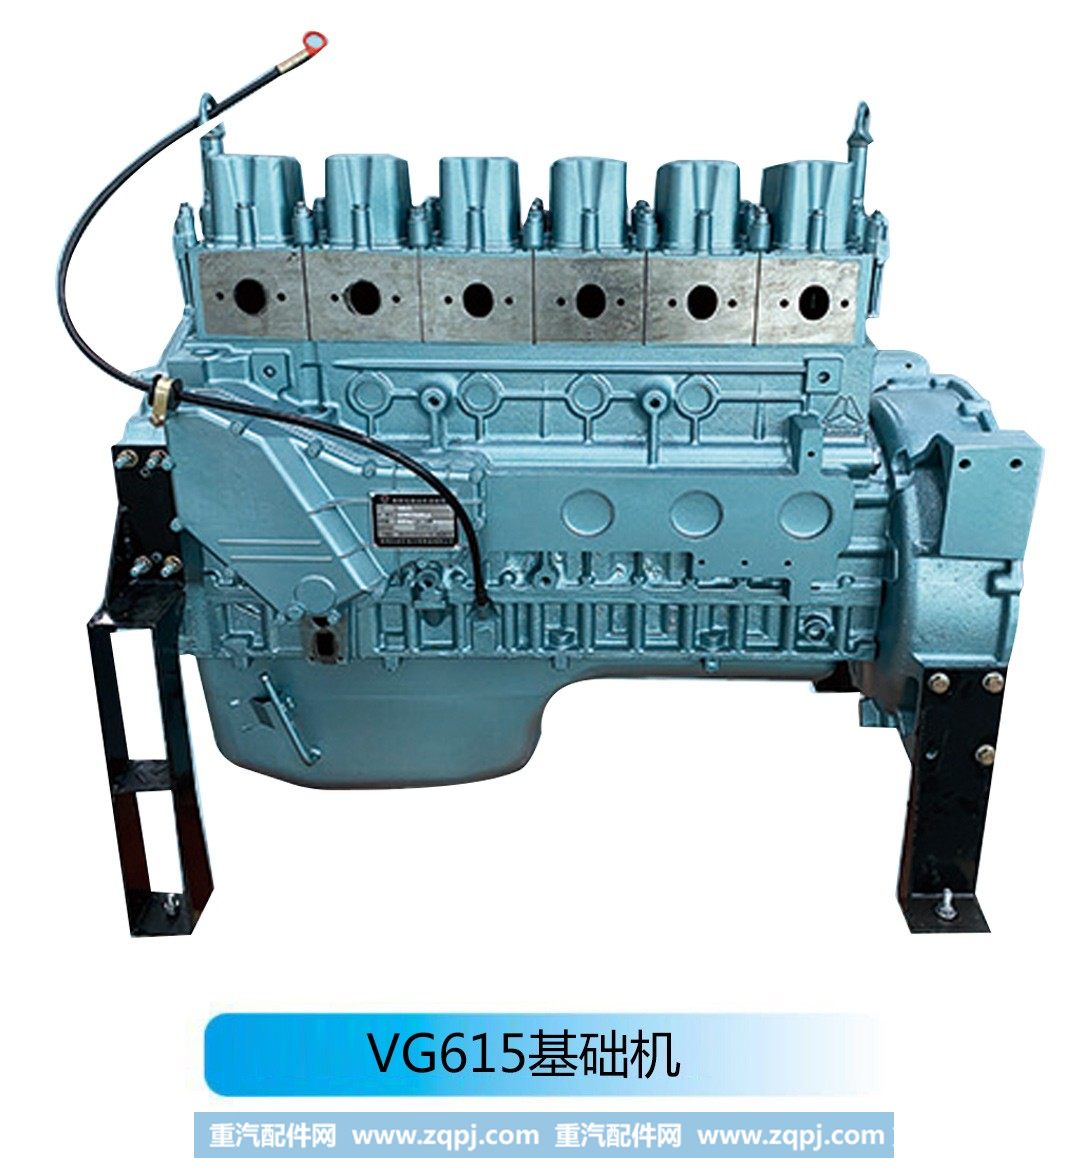 柴油发动机--VG615基础机【法泽尔发动机】/